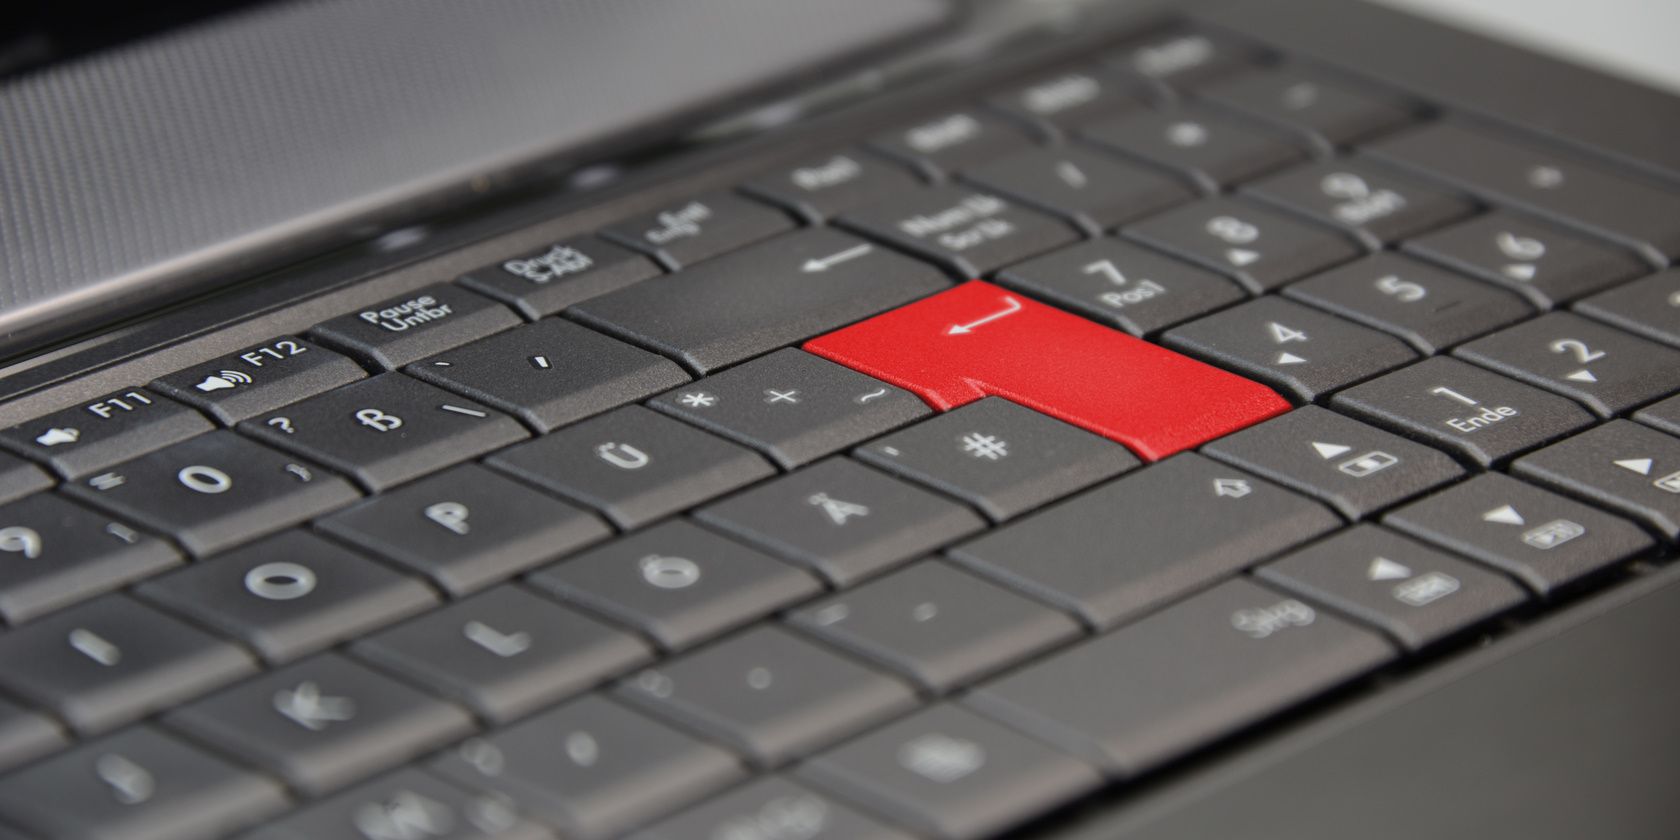 笔记本电脑键盘上的 Enter 键为红色